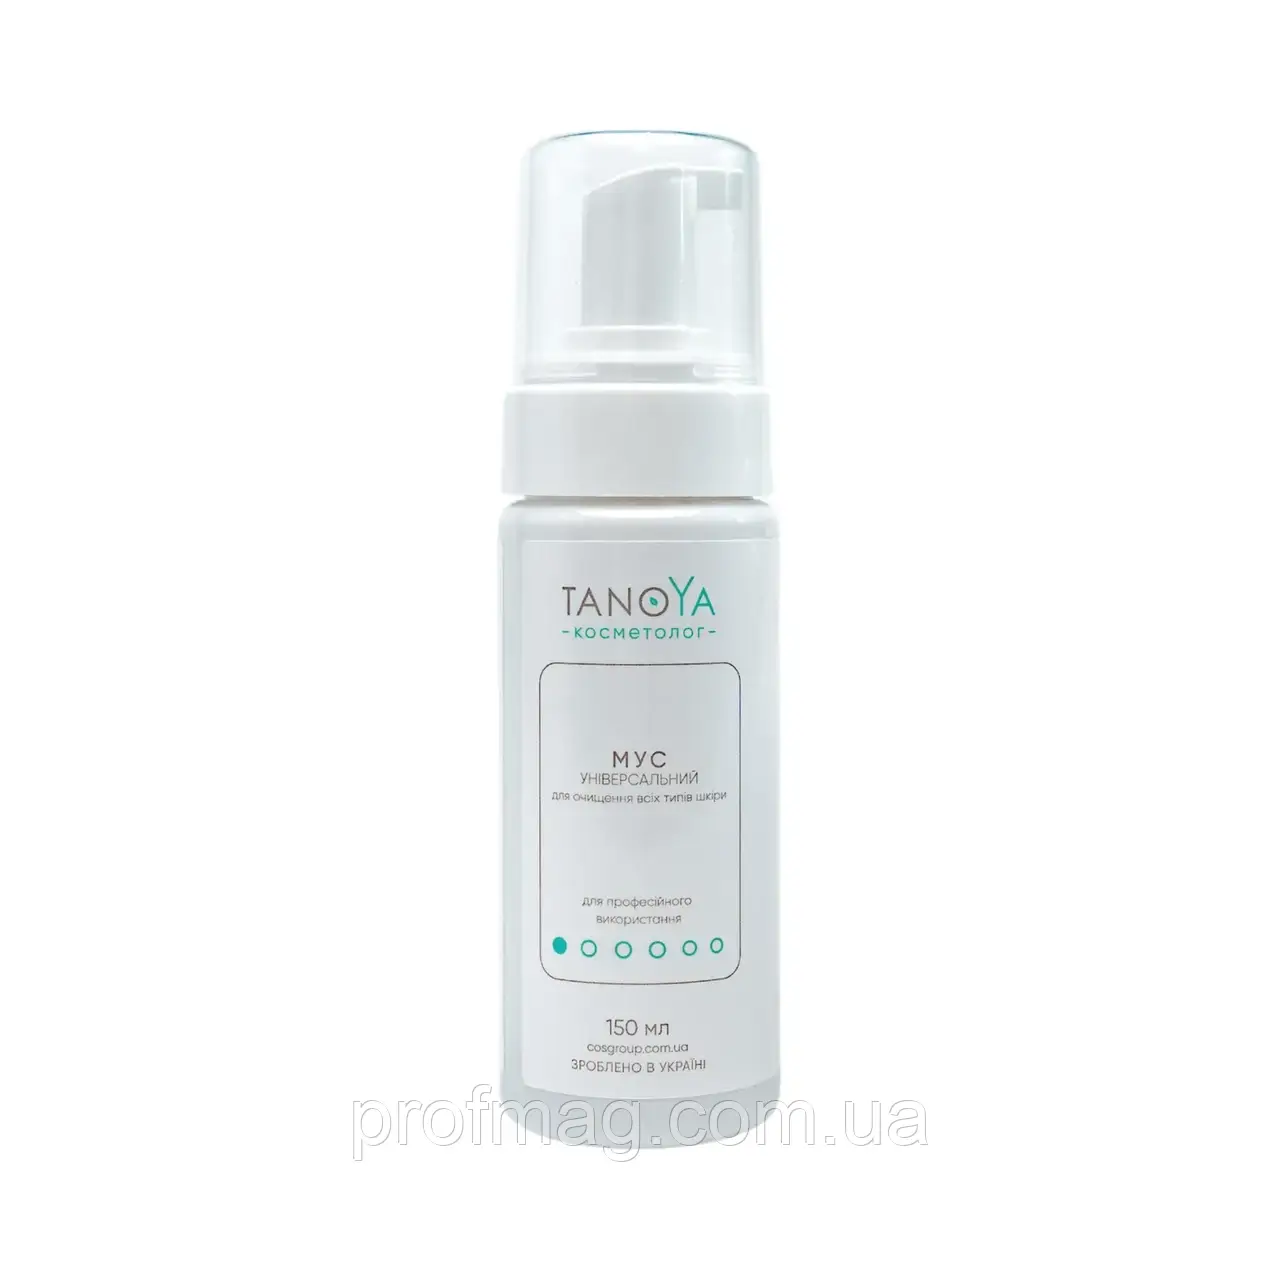 МУС УНІВЕРСАЛЬНИЙ для очищення всіх типів шкіри TANOYA 150 мл, мус для зволоження обличчя, мус для тонізування обличчя